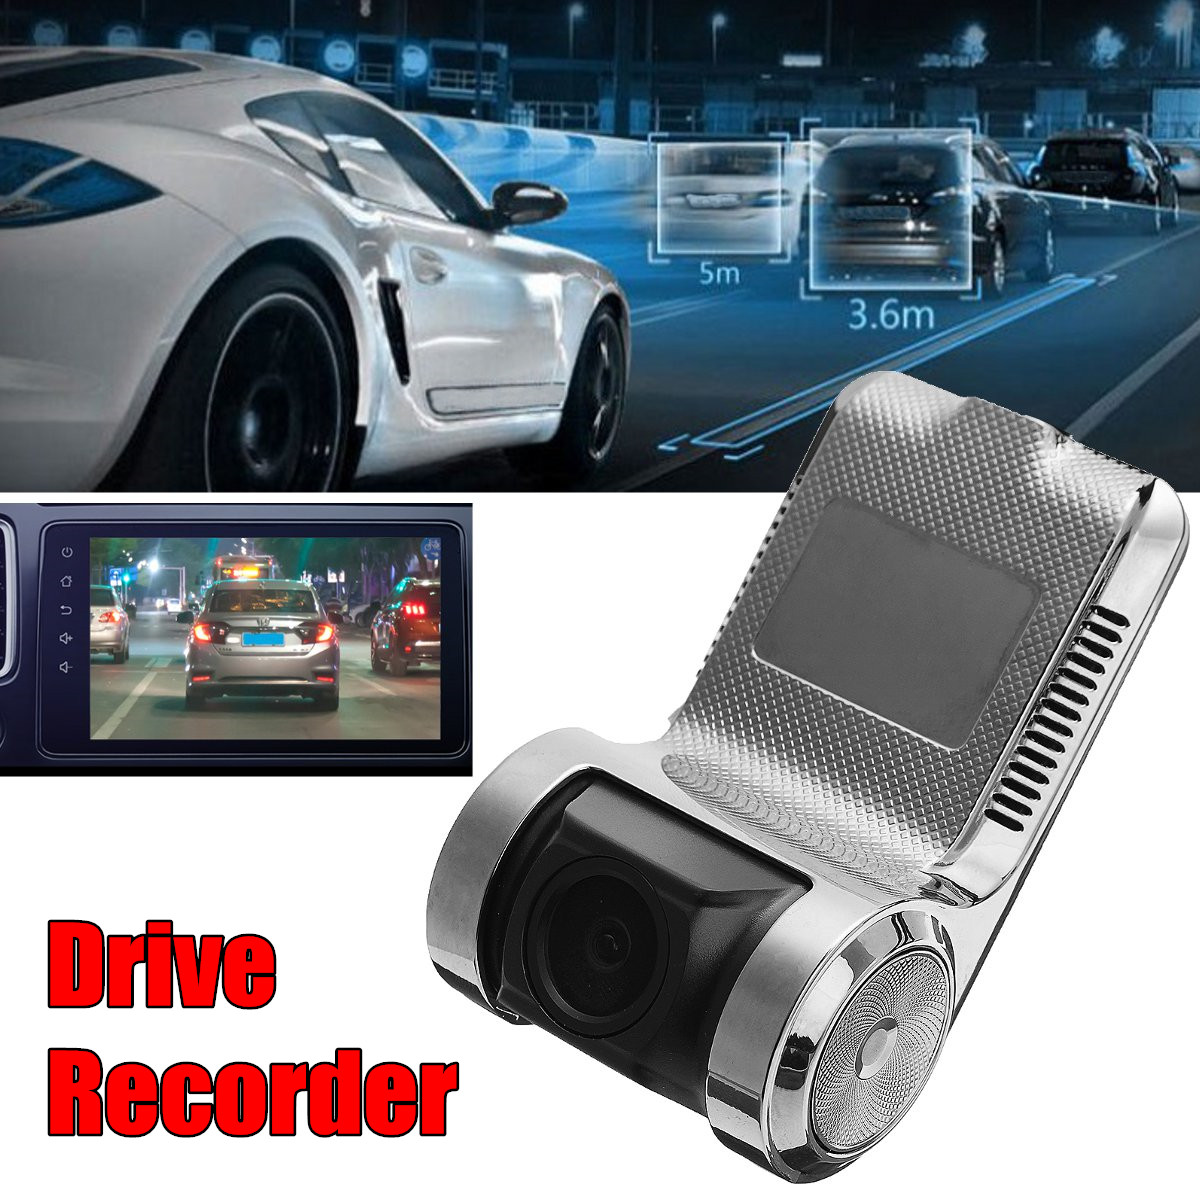 Drive регистратор. Видеорегистратор Drive Recorder. DVR car 360 WIFI. Car_DVR_V1.7. Driving Recorder c102 видеорегистратор.